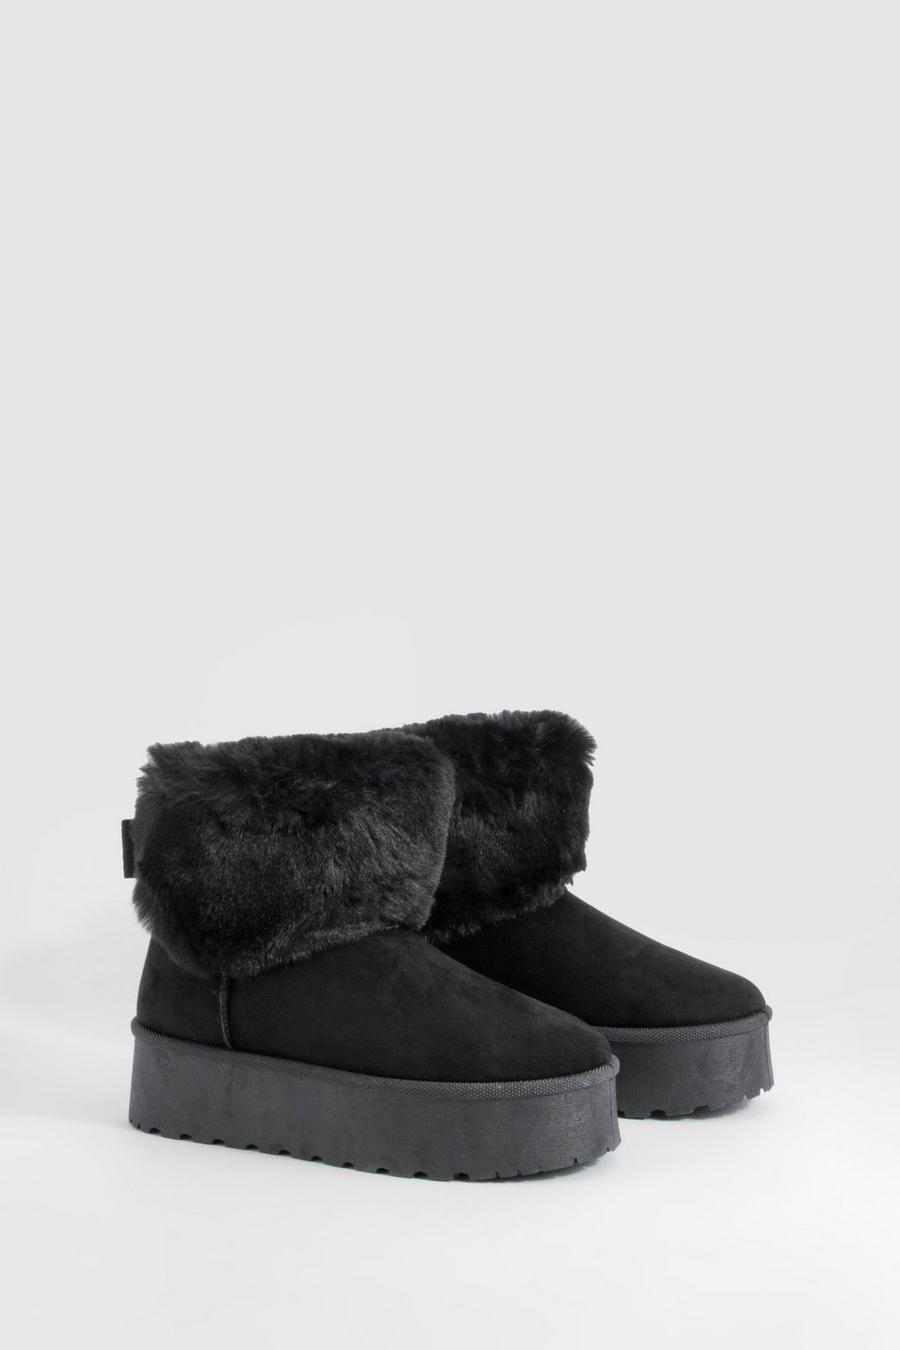 Black Fur Lined Platform Cozy Boots image number 1